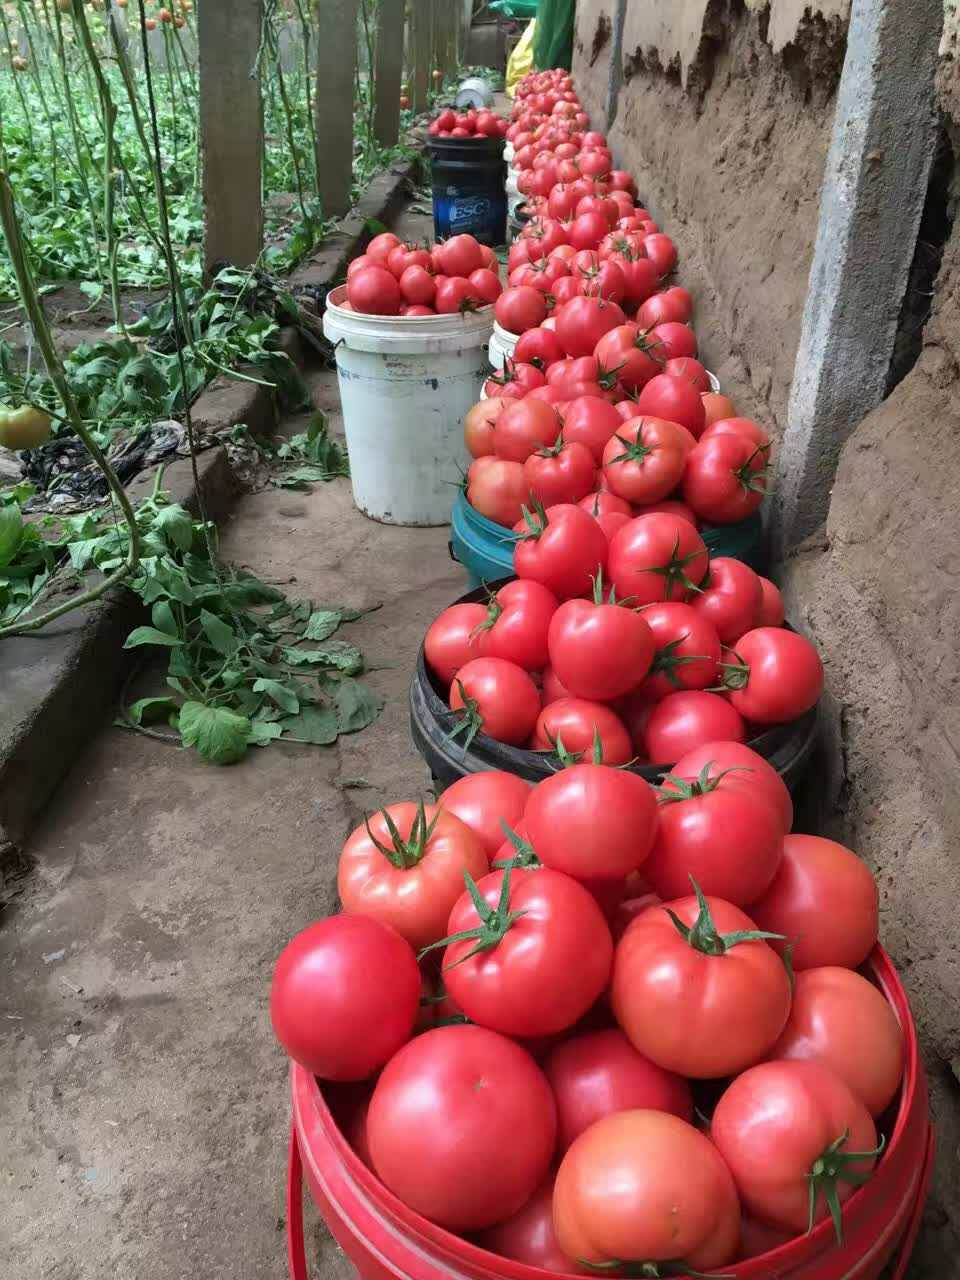 密山大型蔬菜种植基地 常年供应绿色好吃西红柿 西红柿番茄批发